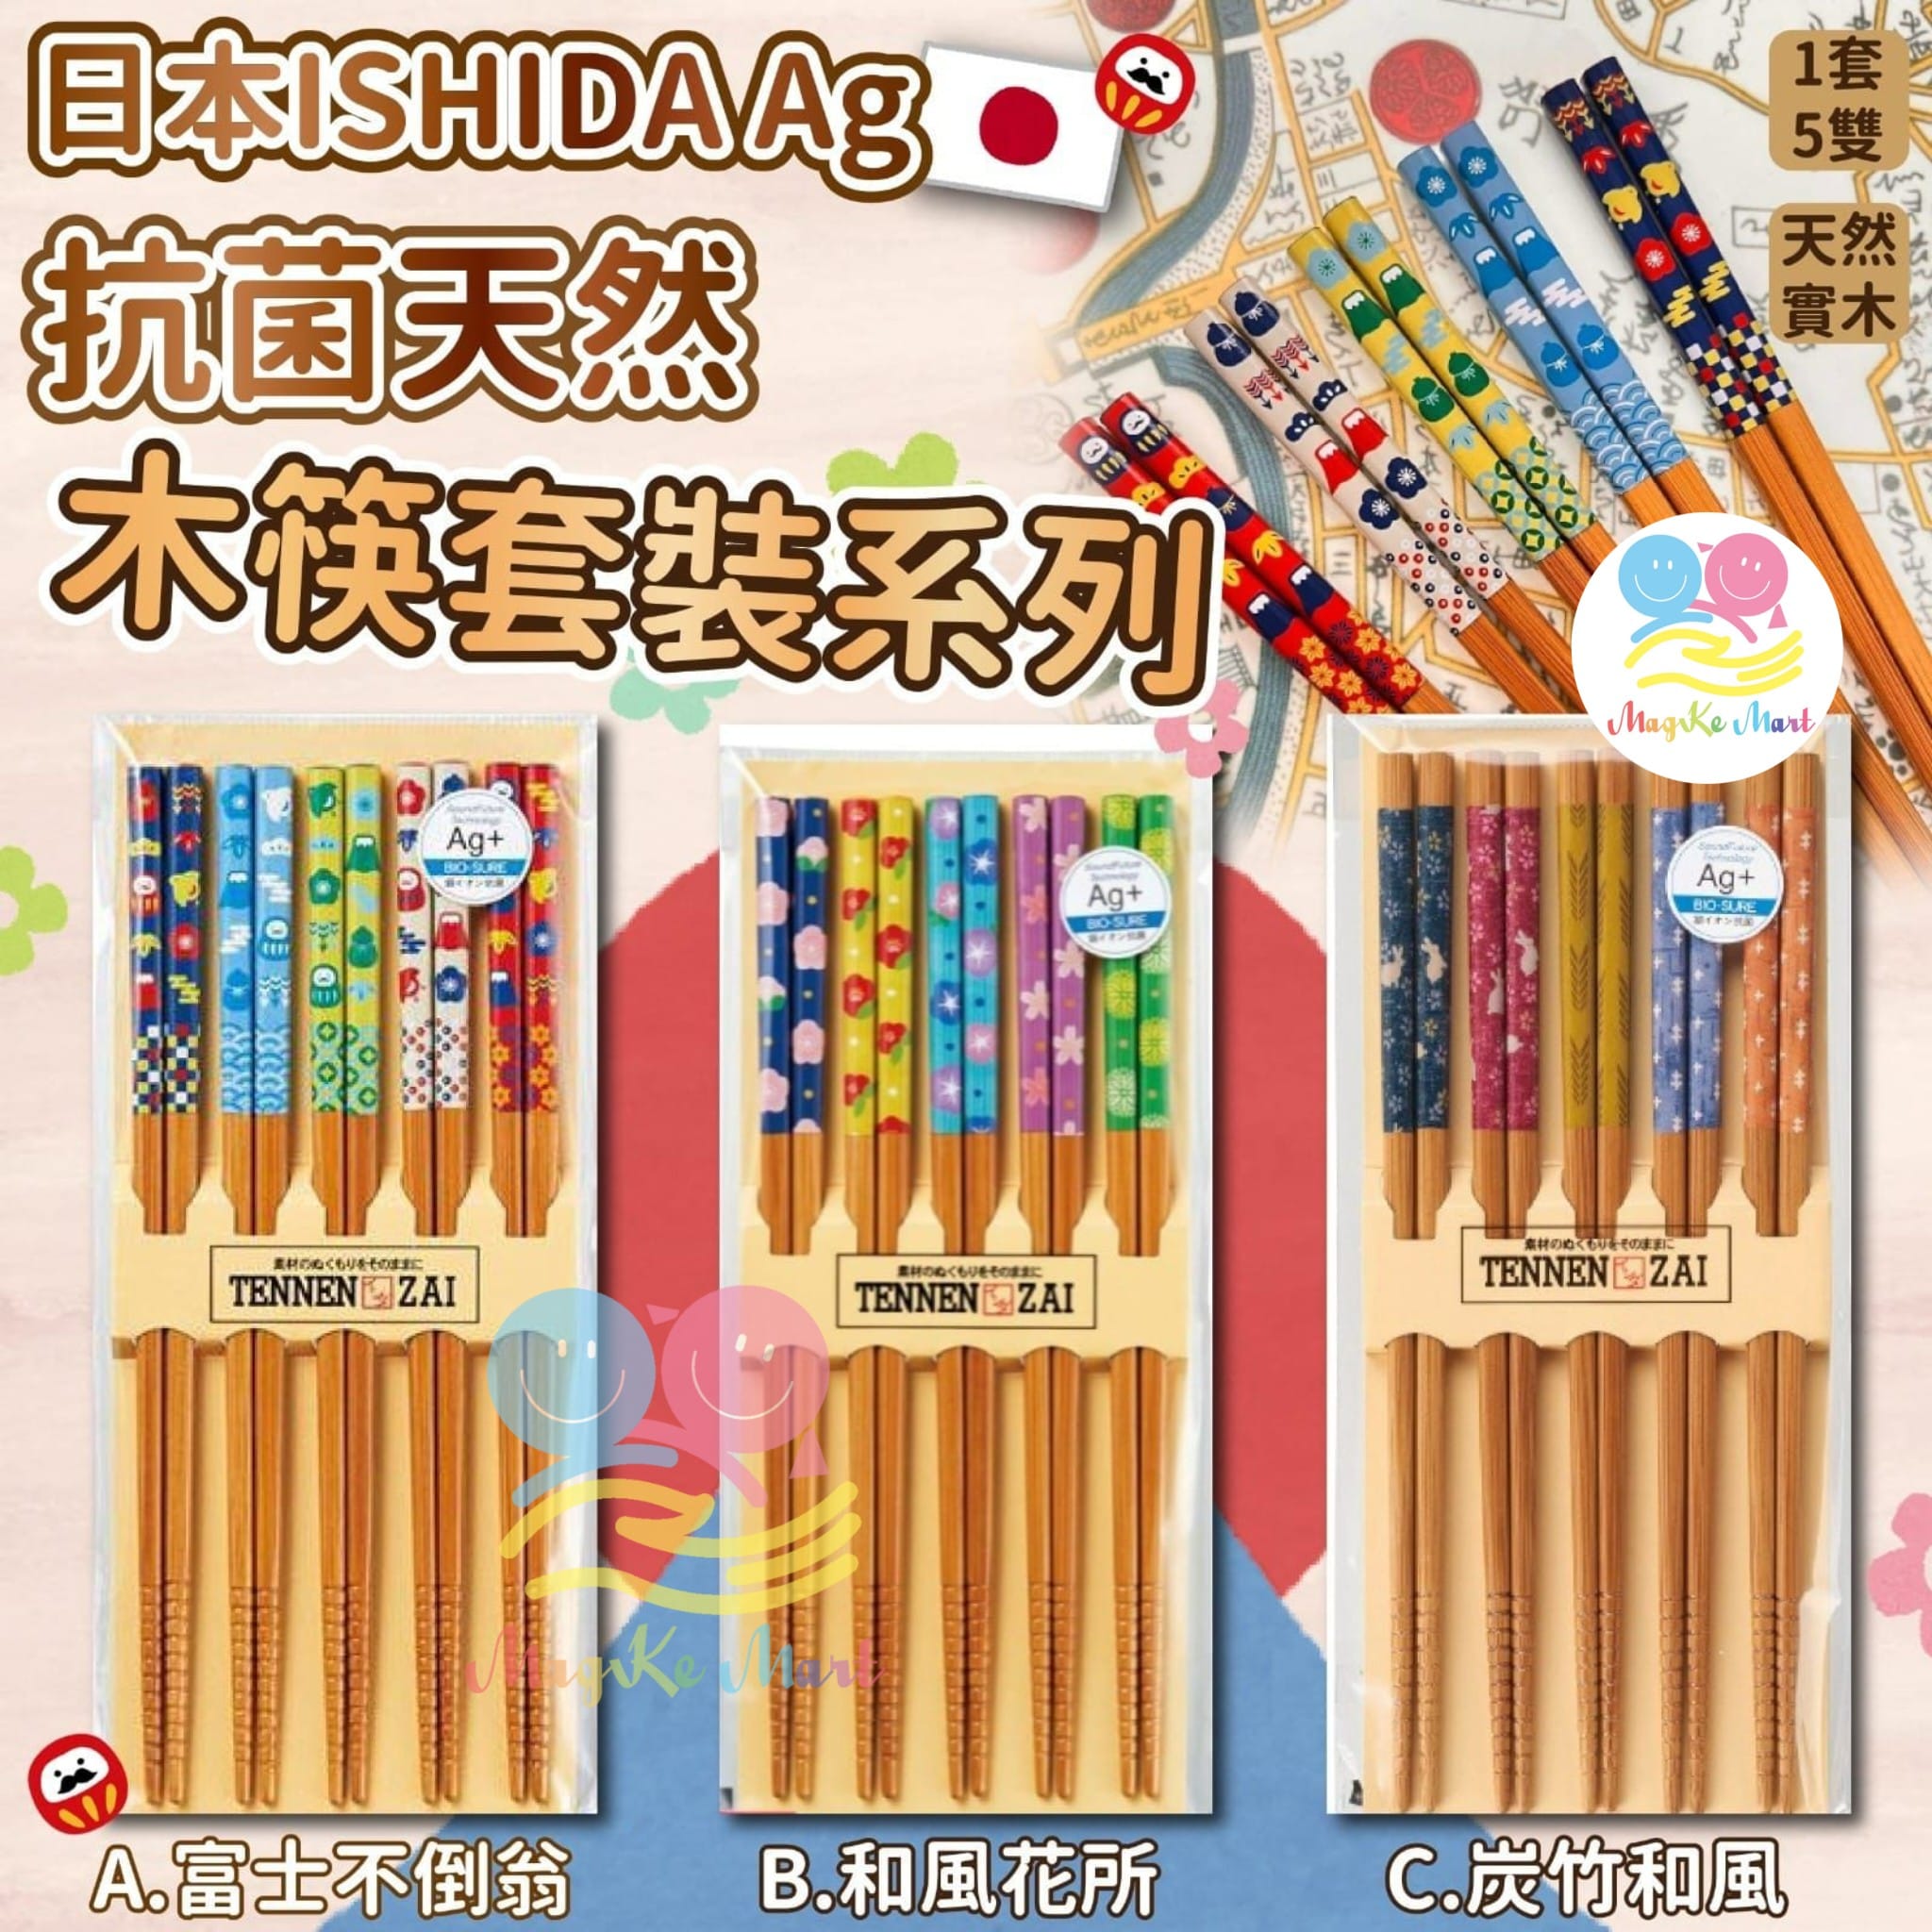 日本 ISHIDA Ag＋抗菌天然木筷套裝系列(1套5對)